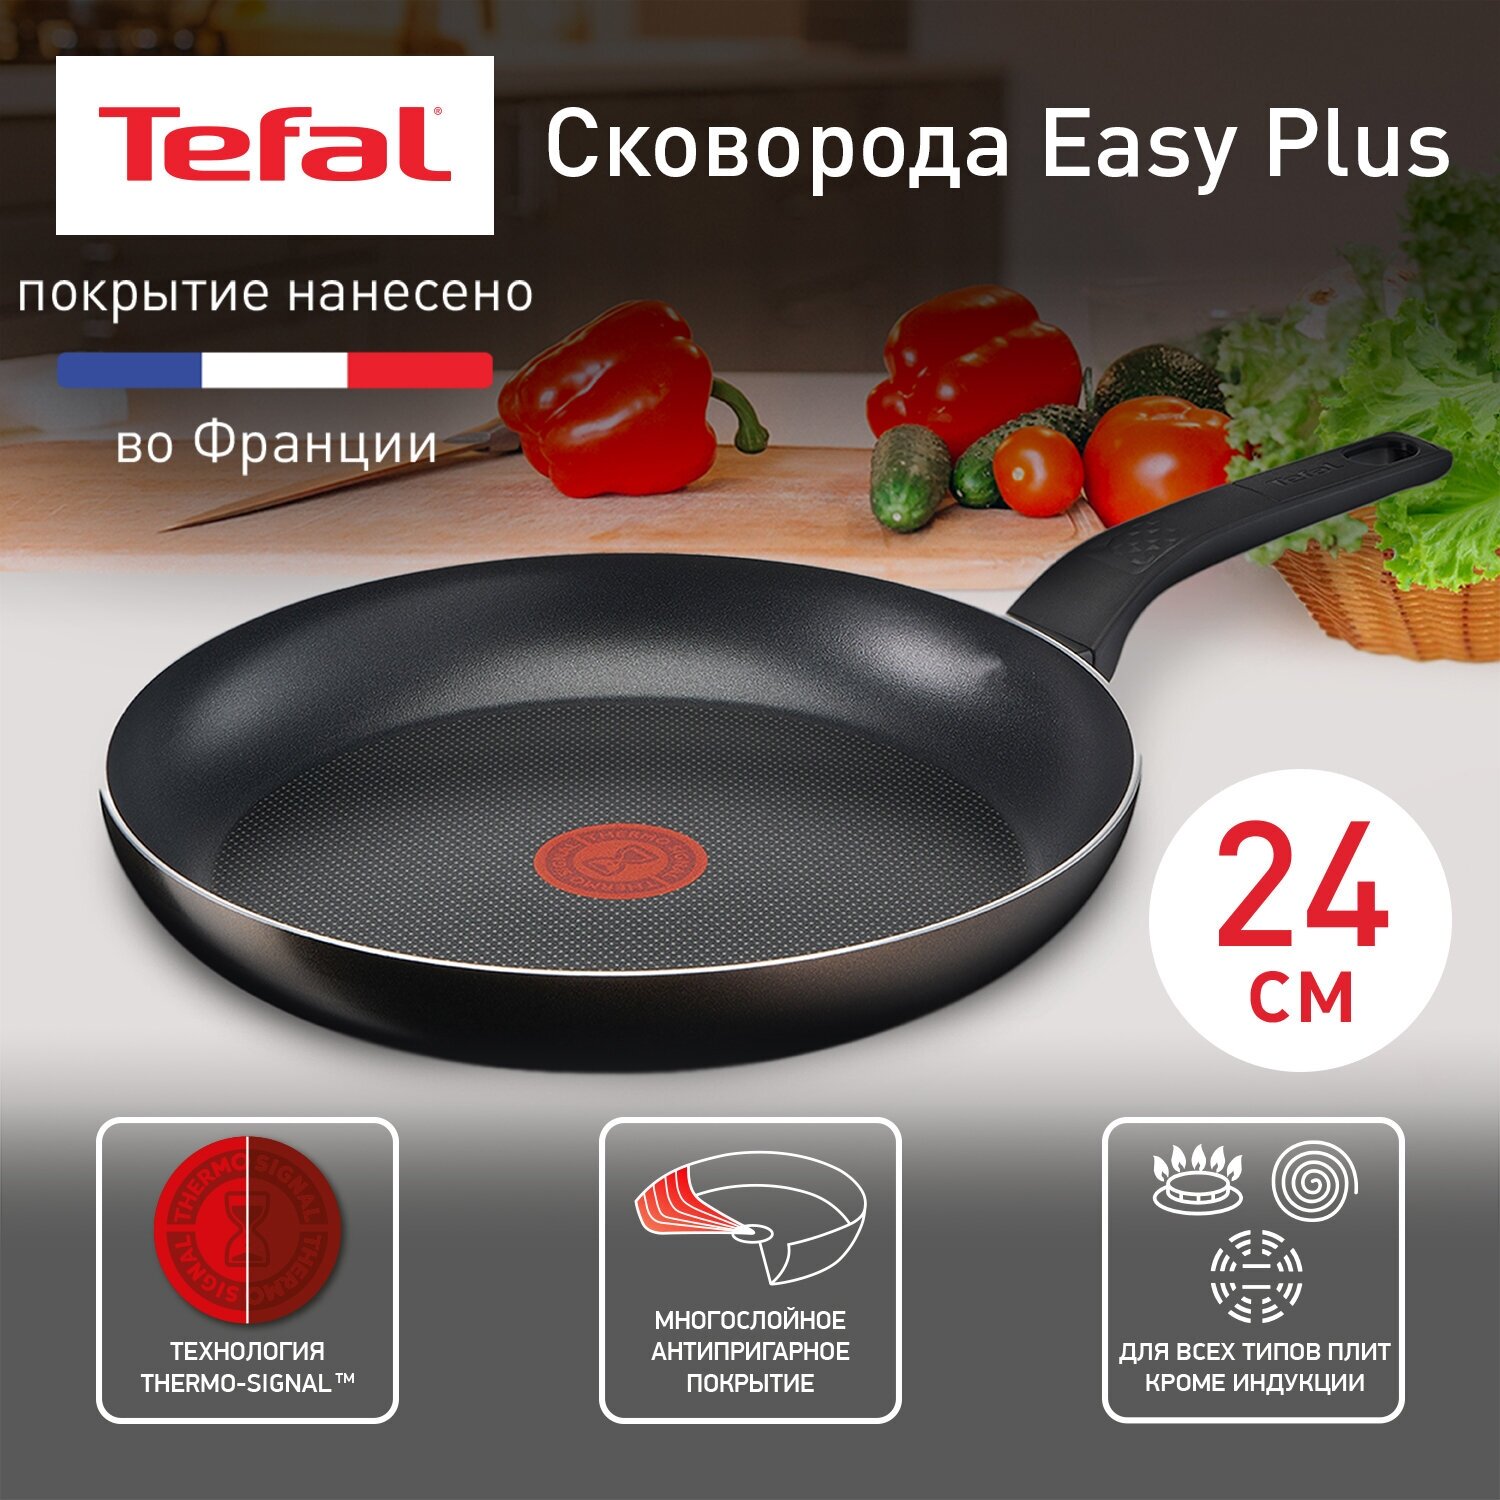 Сковорода Tefal Easy Plus 04237124, диаметр 24 см, с индикатором температуры, с антипригарным покрытием, для газовых, электрических плит